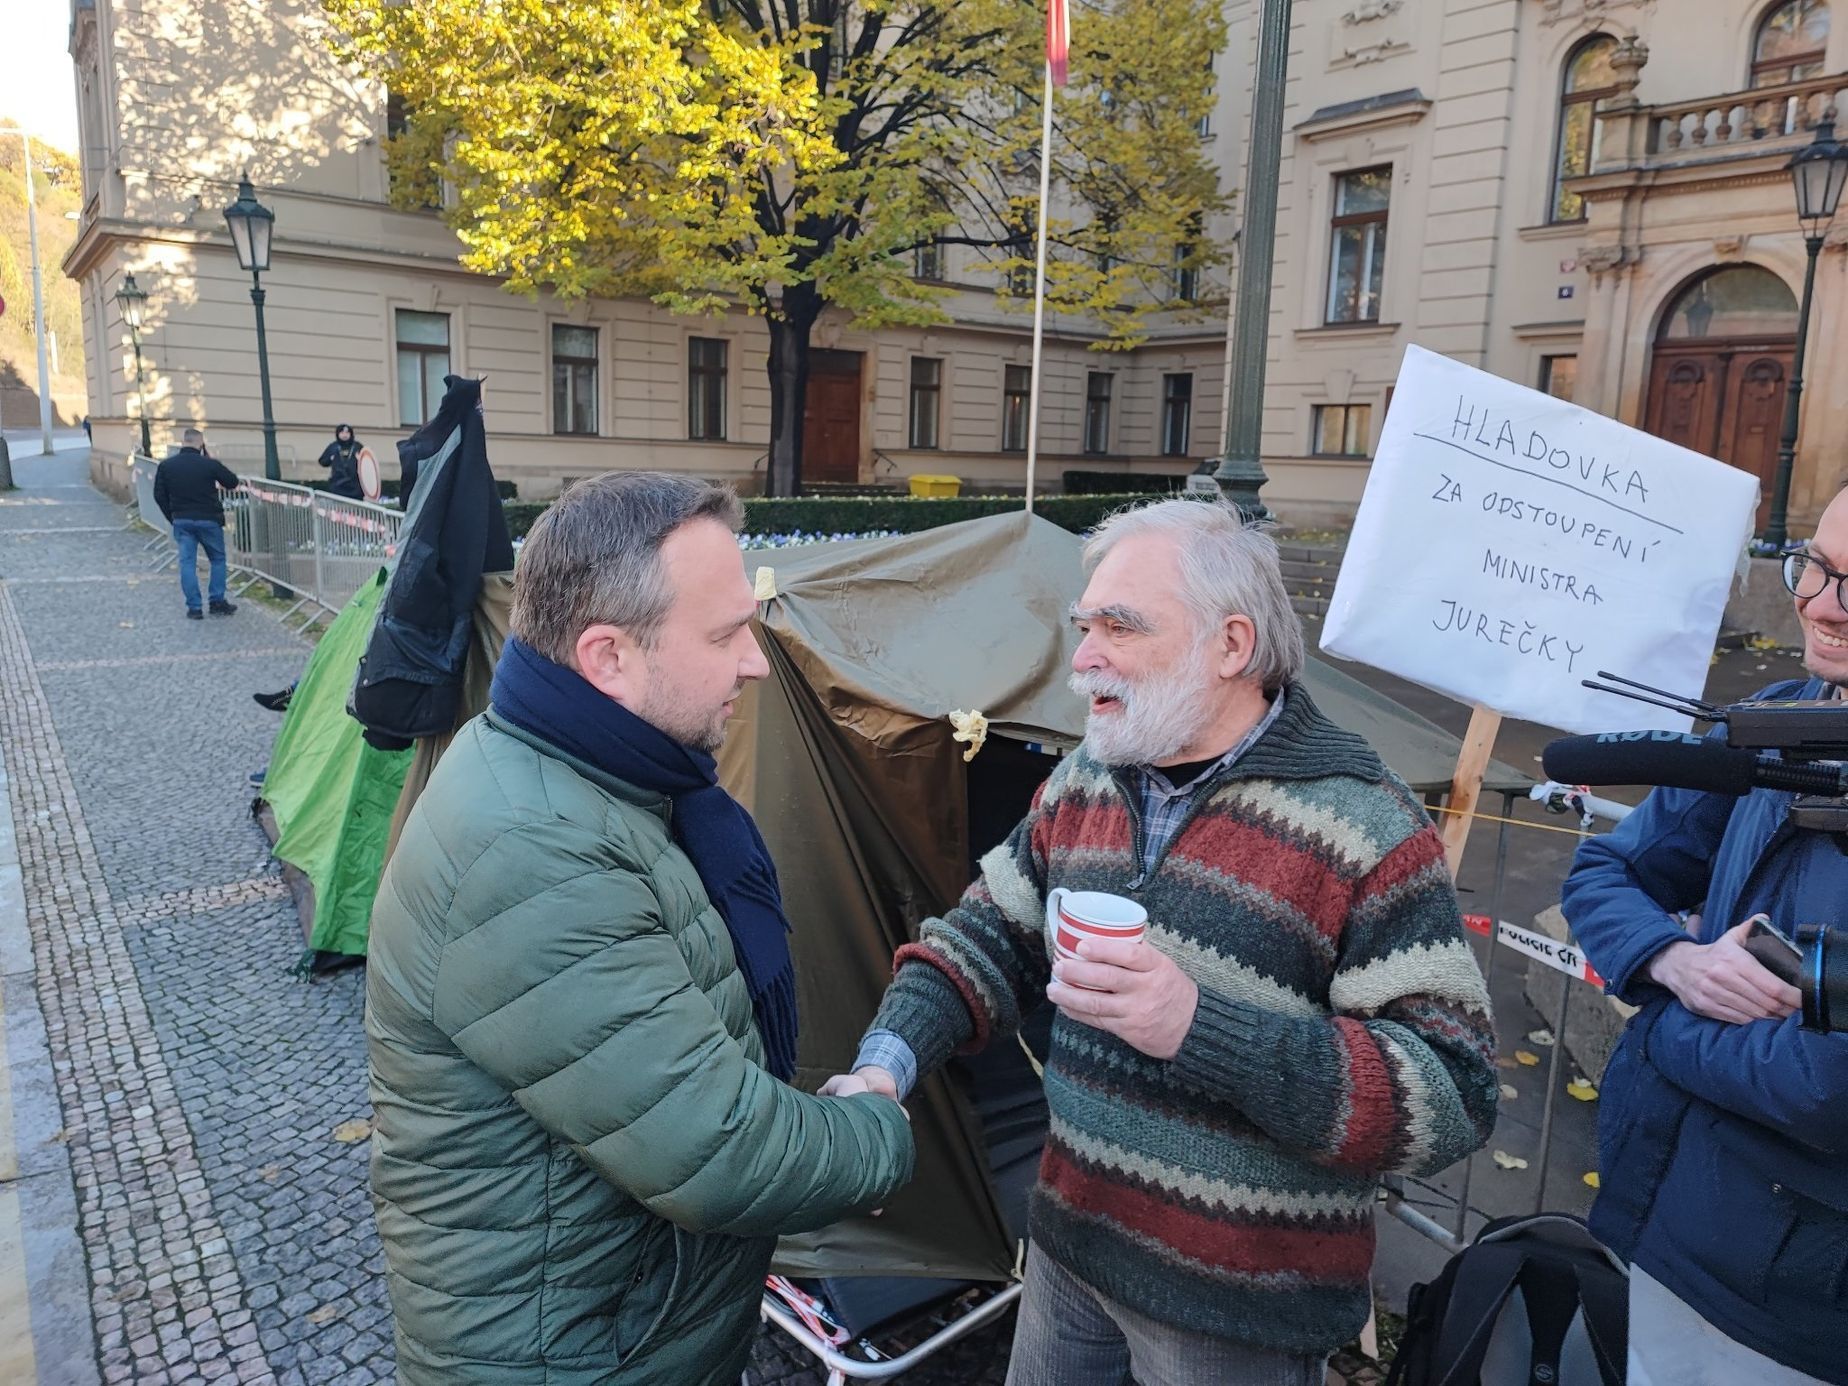 Gruntorád, Jurečka, hladovka, protest